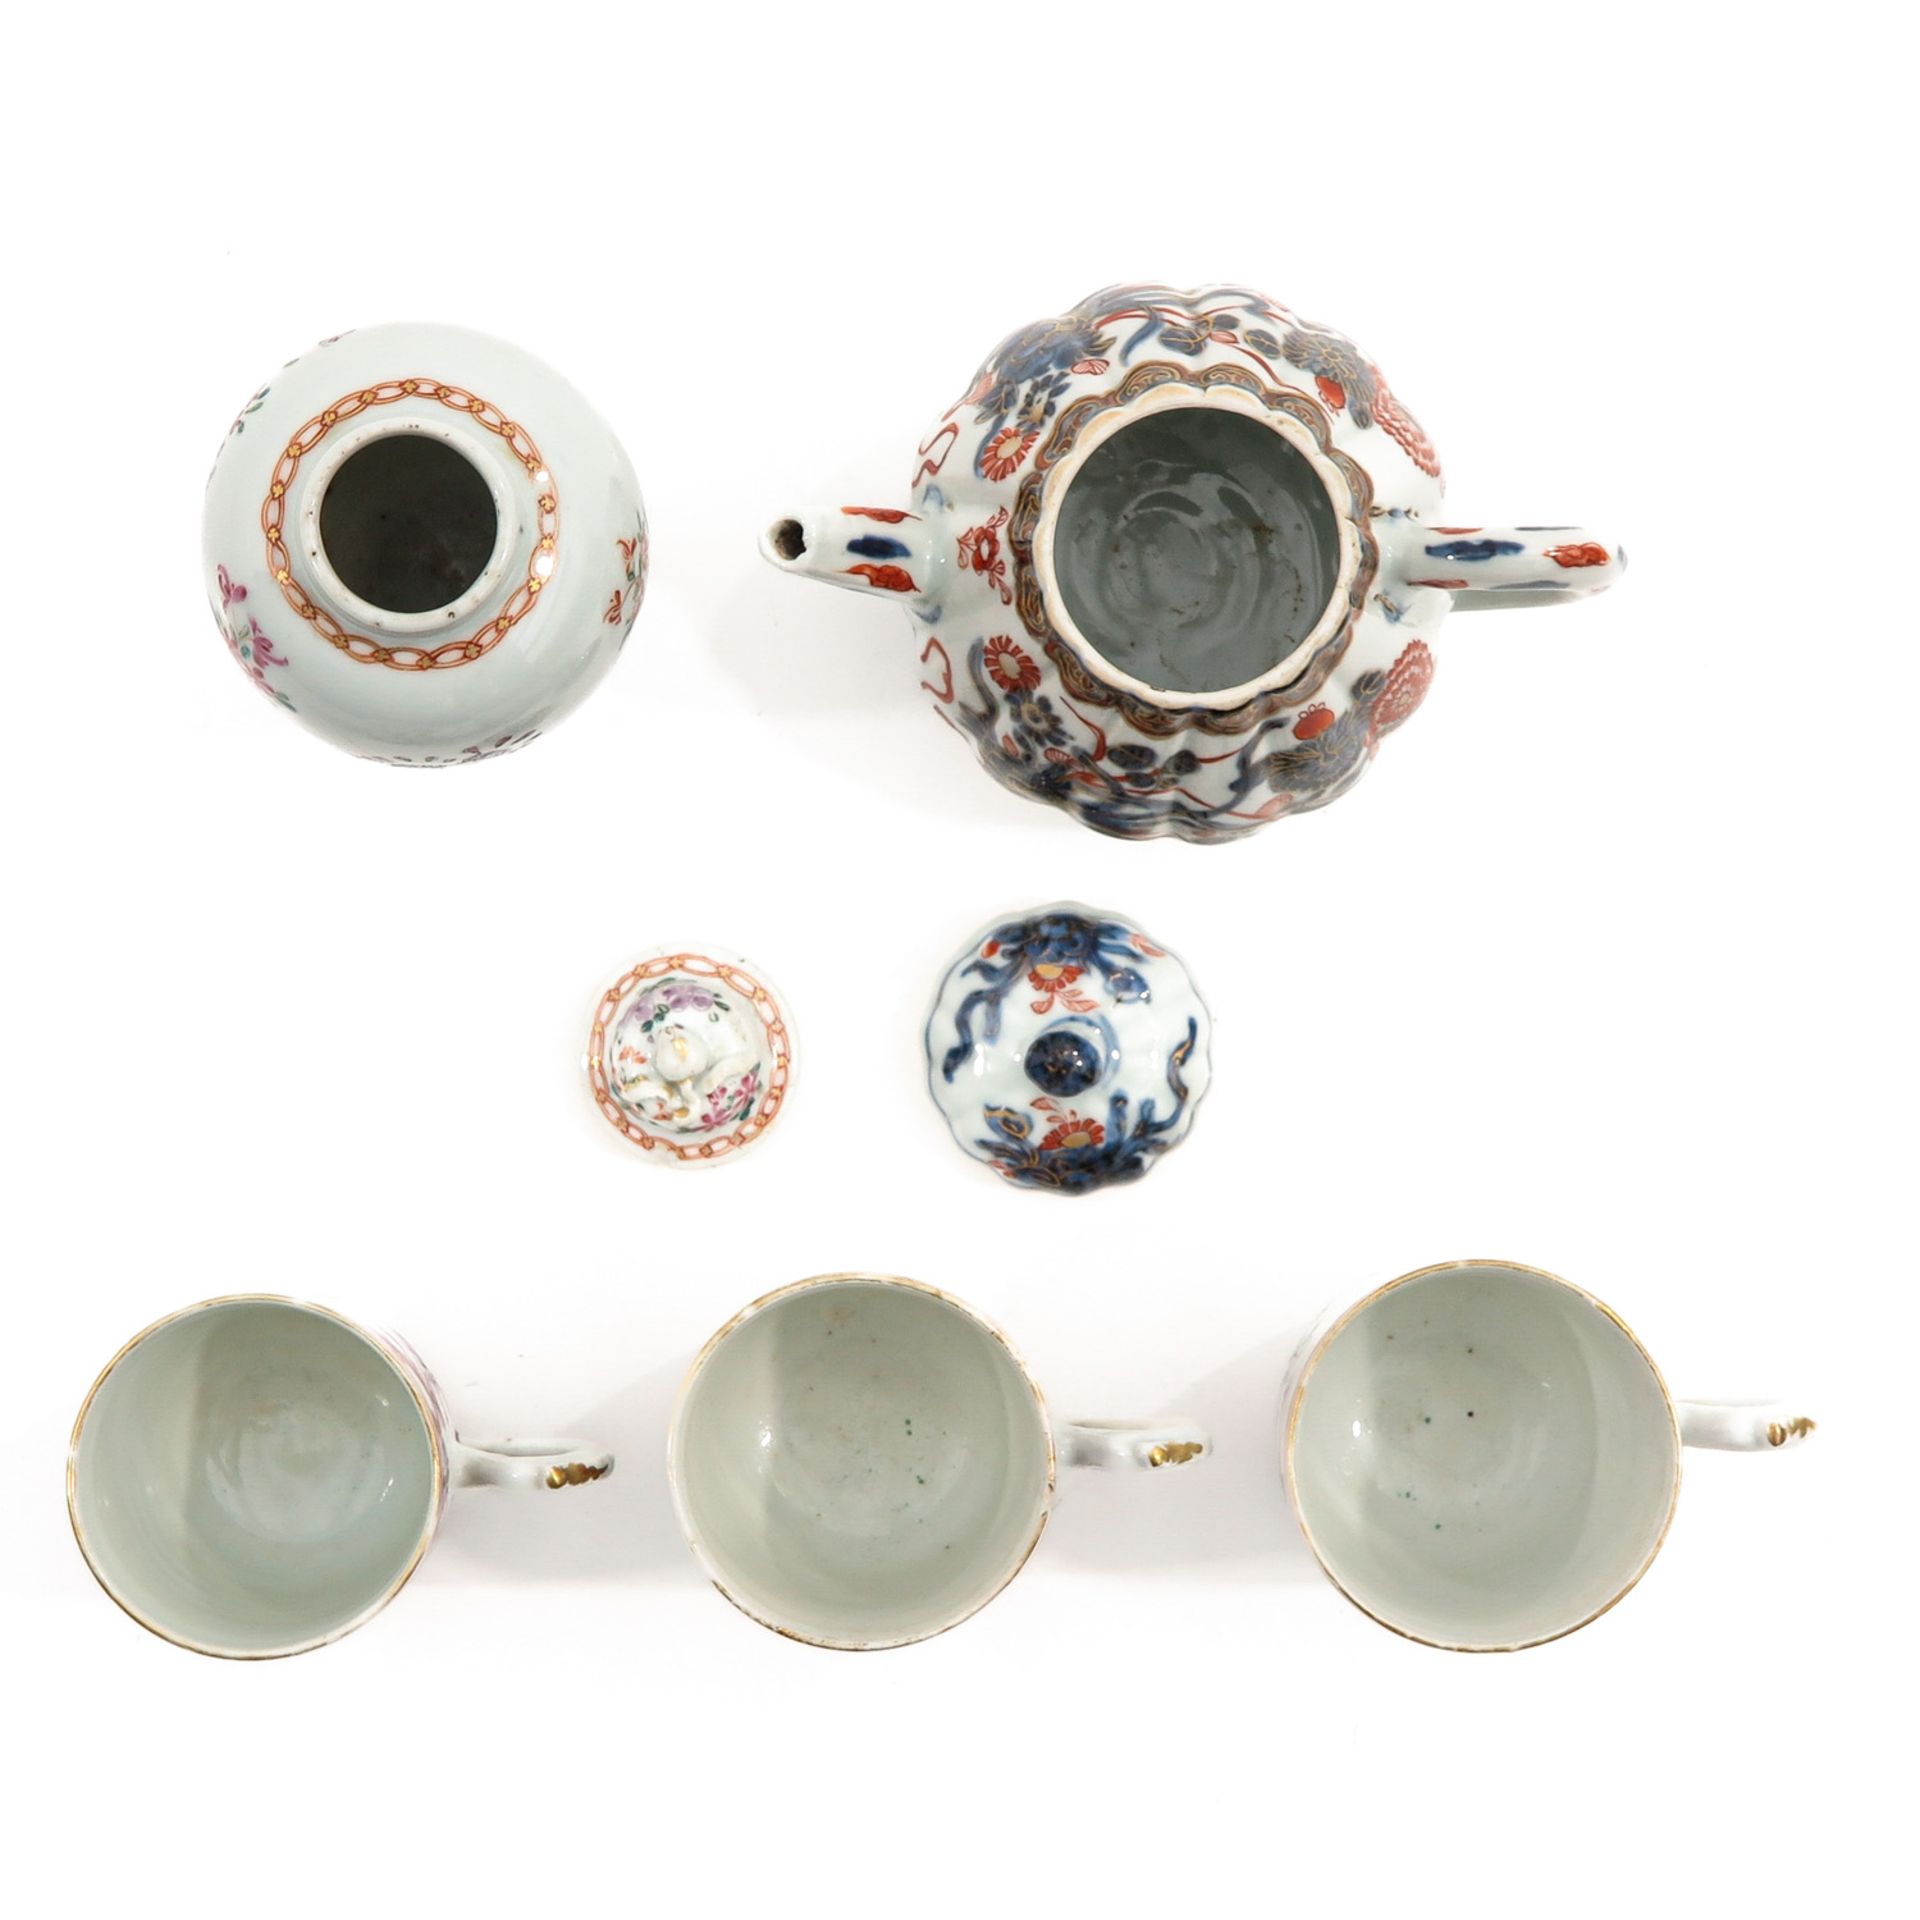 A Diverse Collection of Porcelain - Bild 5 aus 10